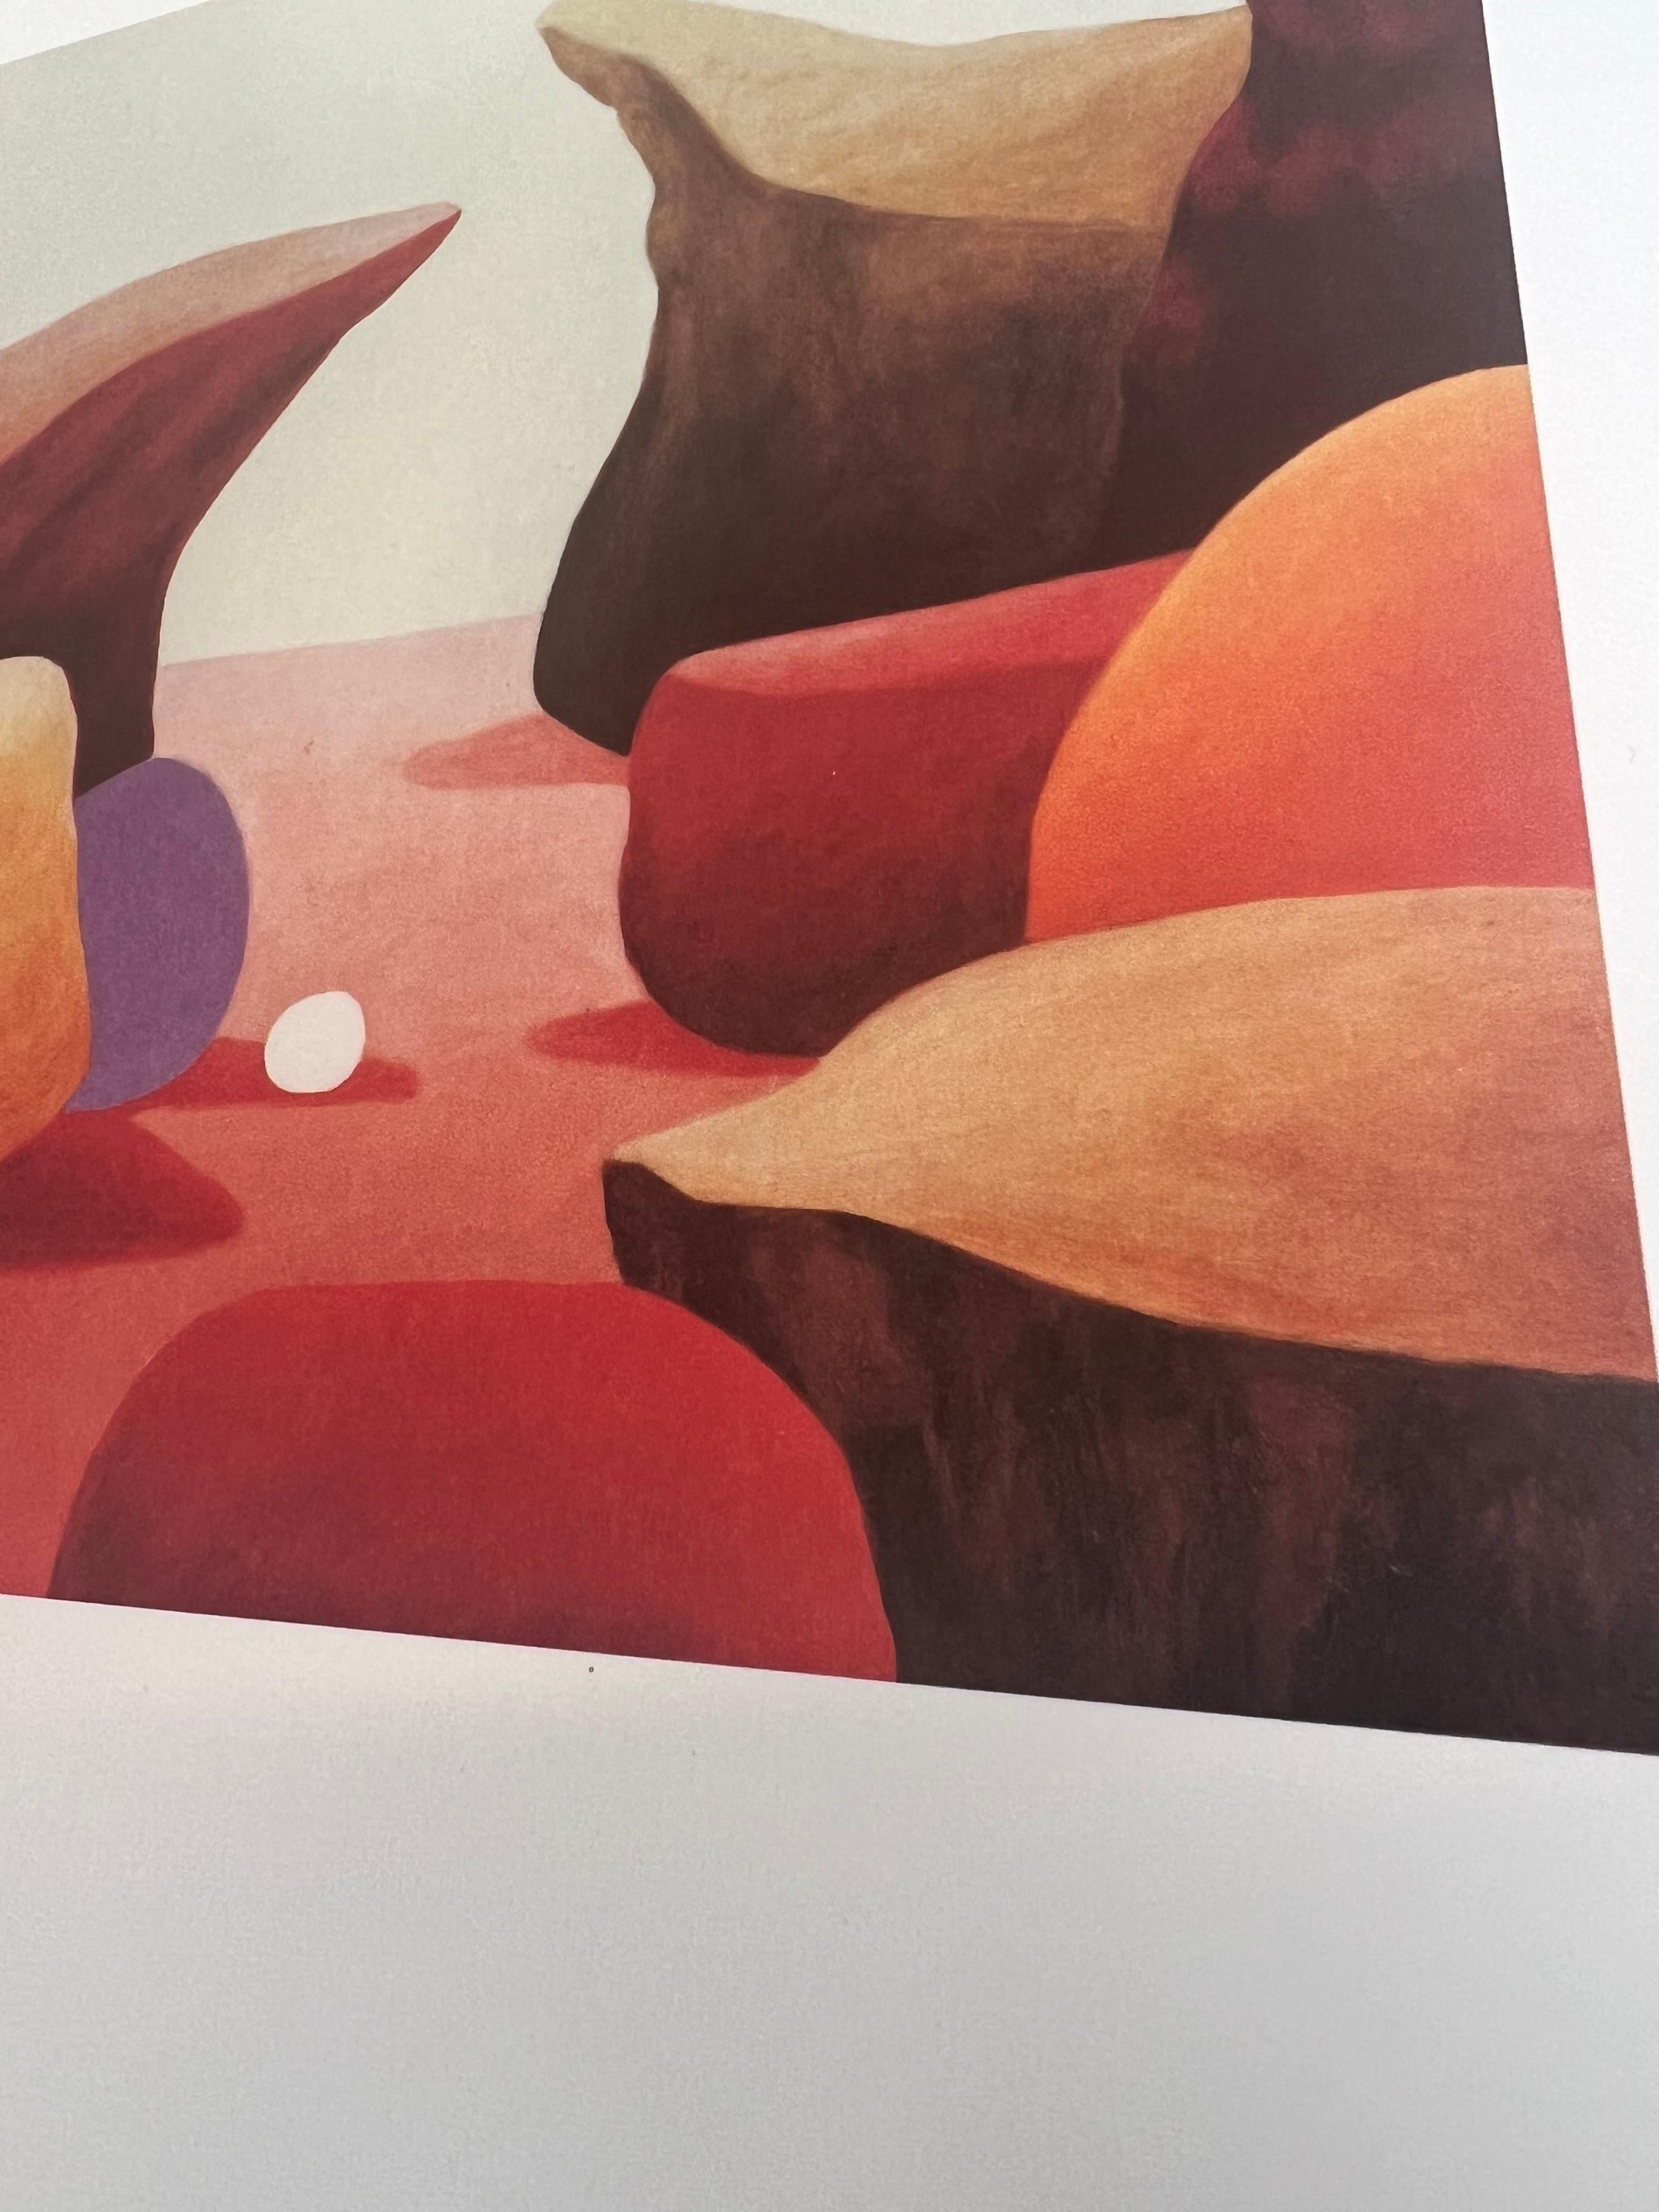 NICOLAS PARTY
STILLEBEN (FELSEN), 2023
4-Farben-Offsetdruck auf dickem, mattem Papier.
30 × 30 cm
Auflage von 100 Stück

Produziert vom MUSEUM FRIEDER BURDA.